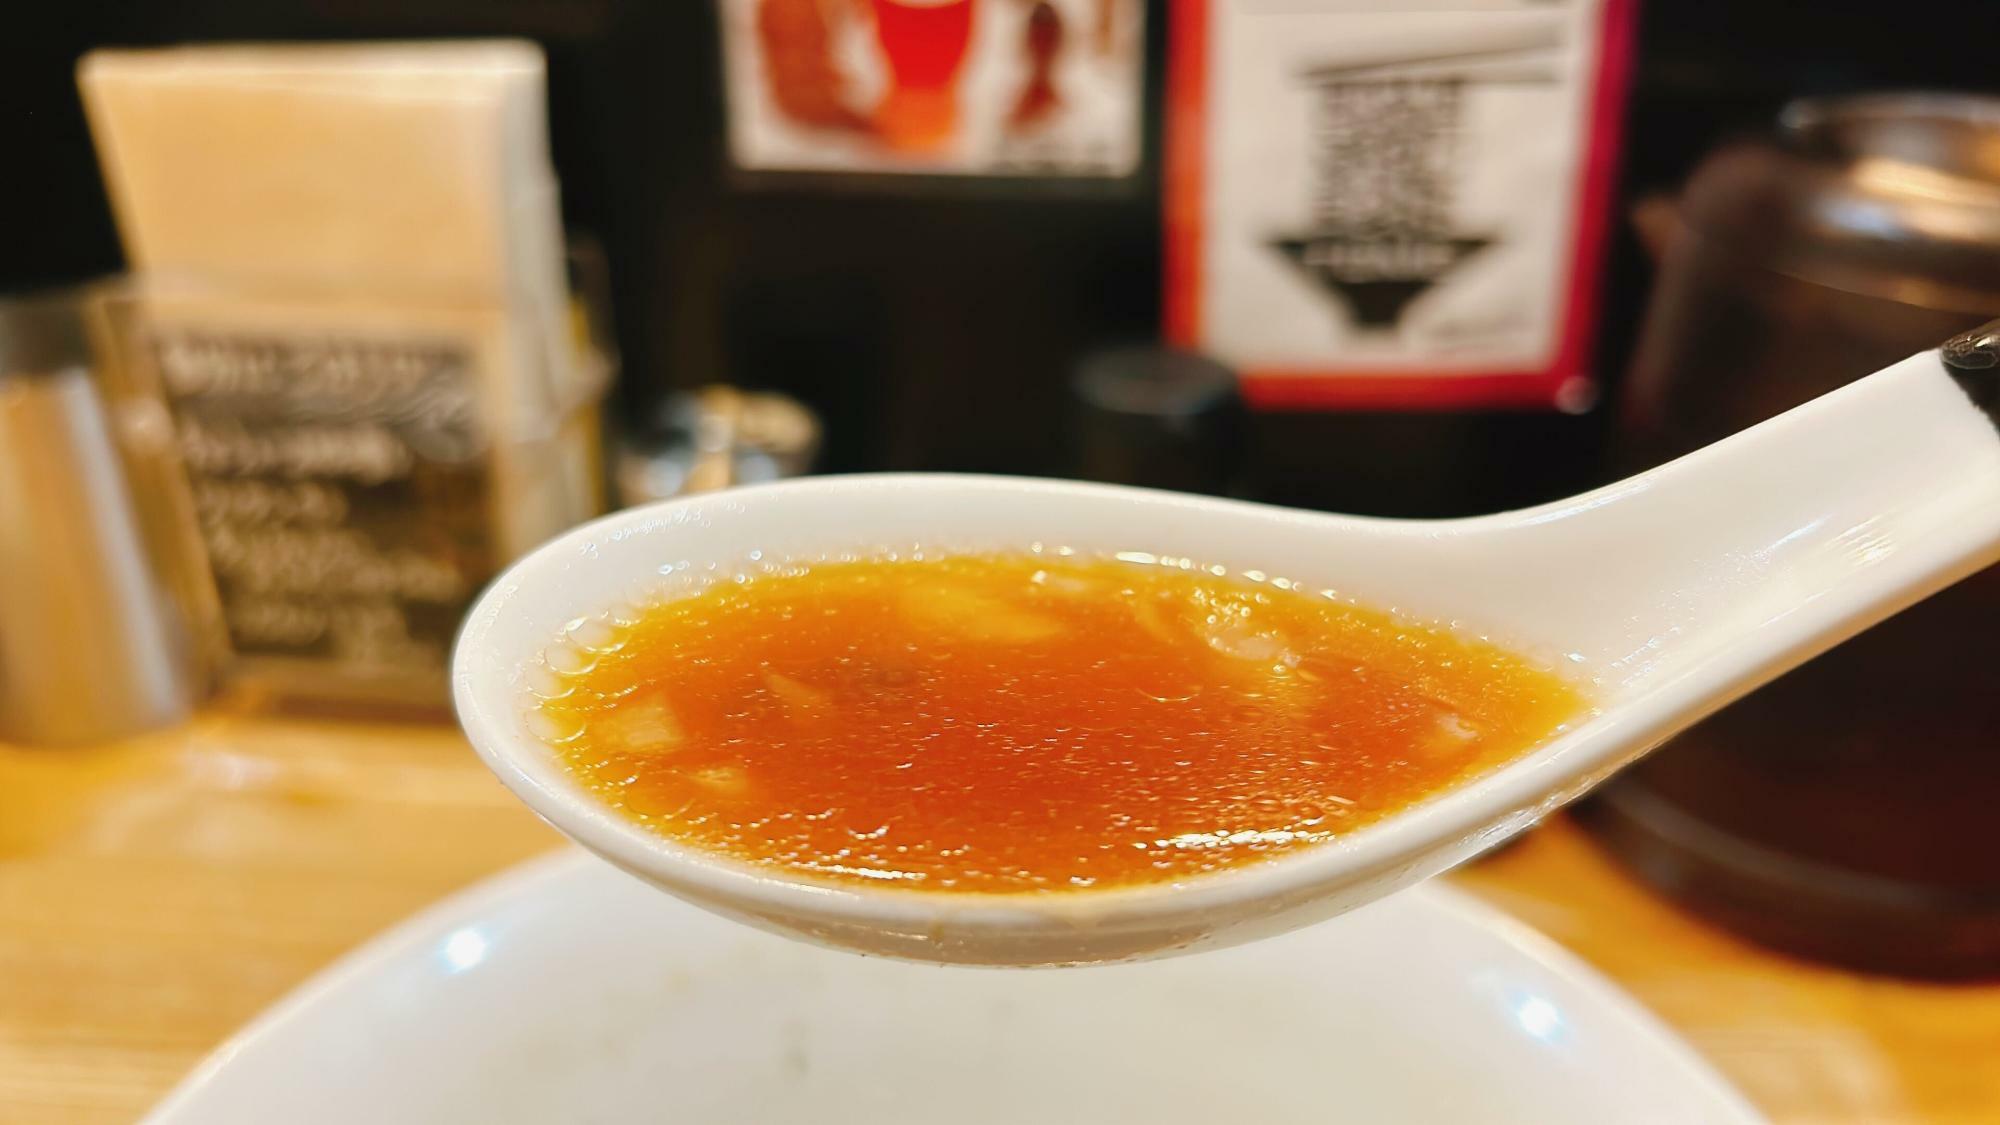 程よい大きさに刻まれたしゃきしゃきの玉ねぎと一緒に飲むスープは絶品です